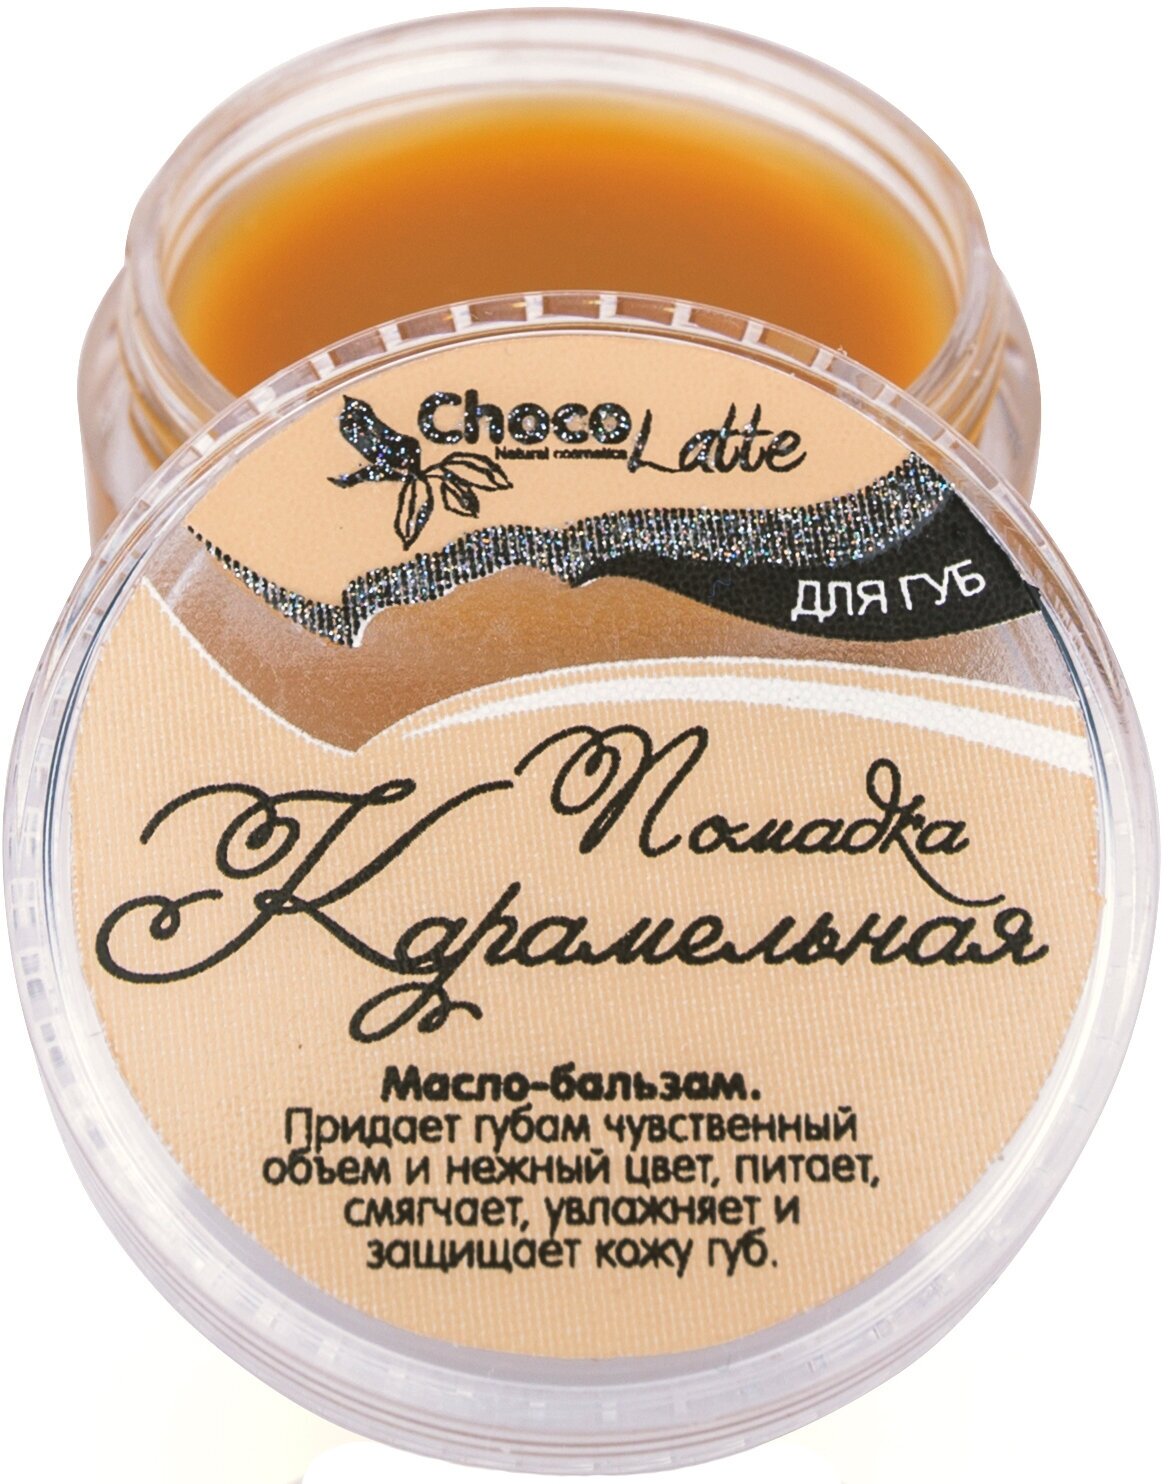 ChocoLatte Бальзам-масло для губ помадка карамельная 10g